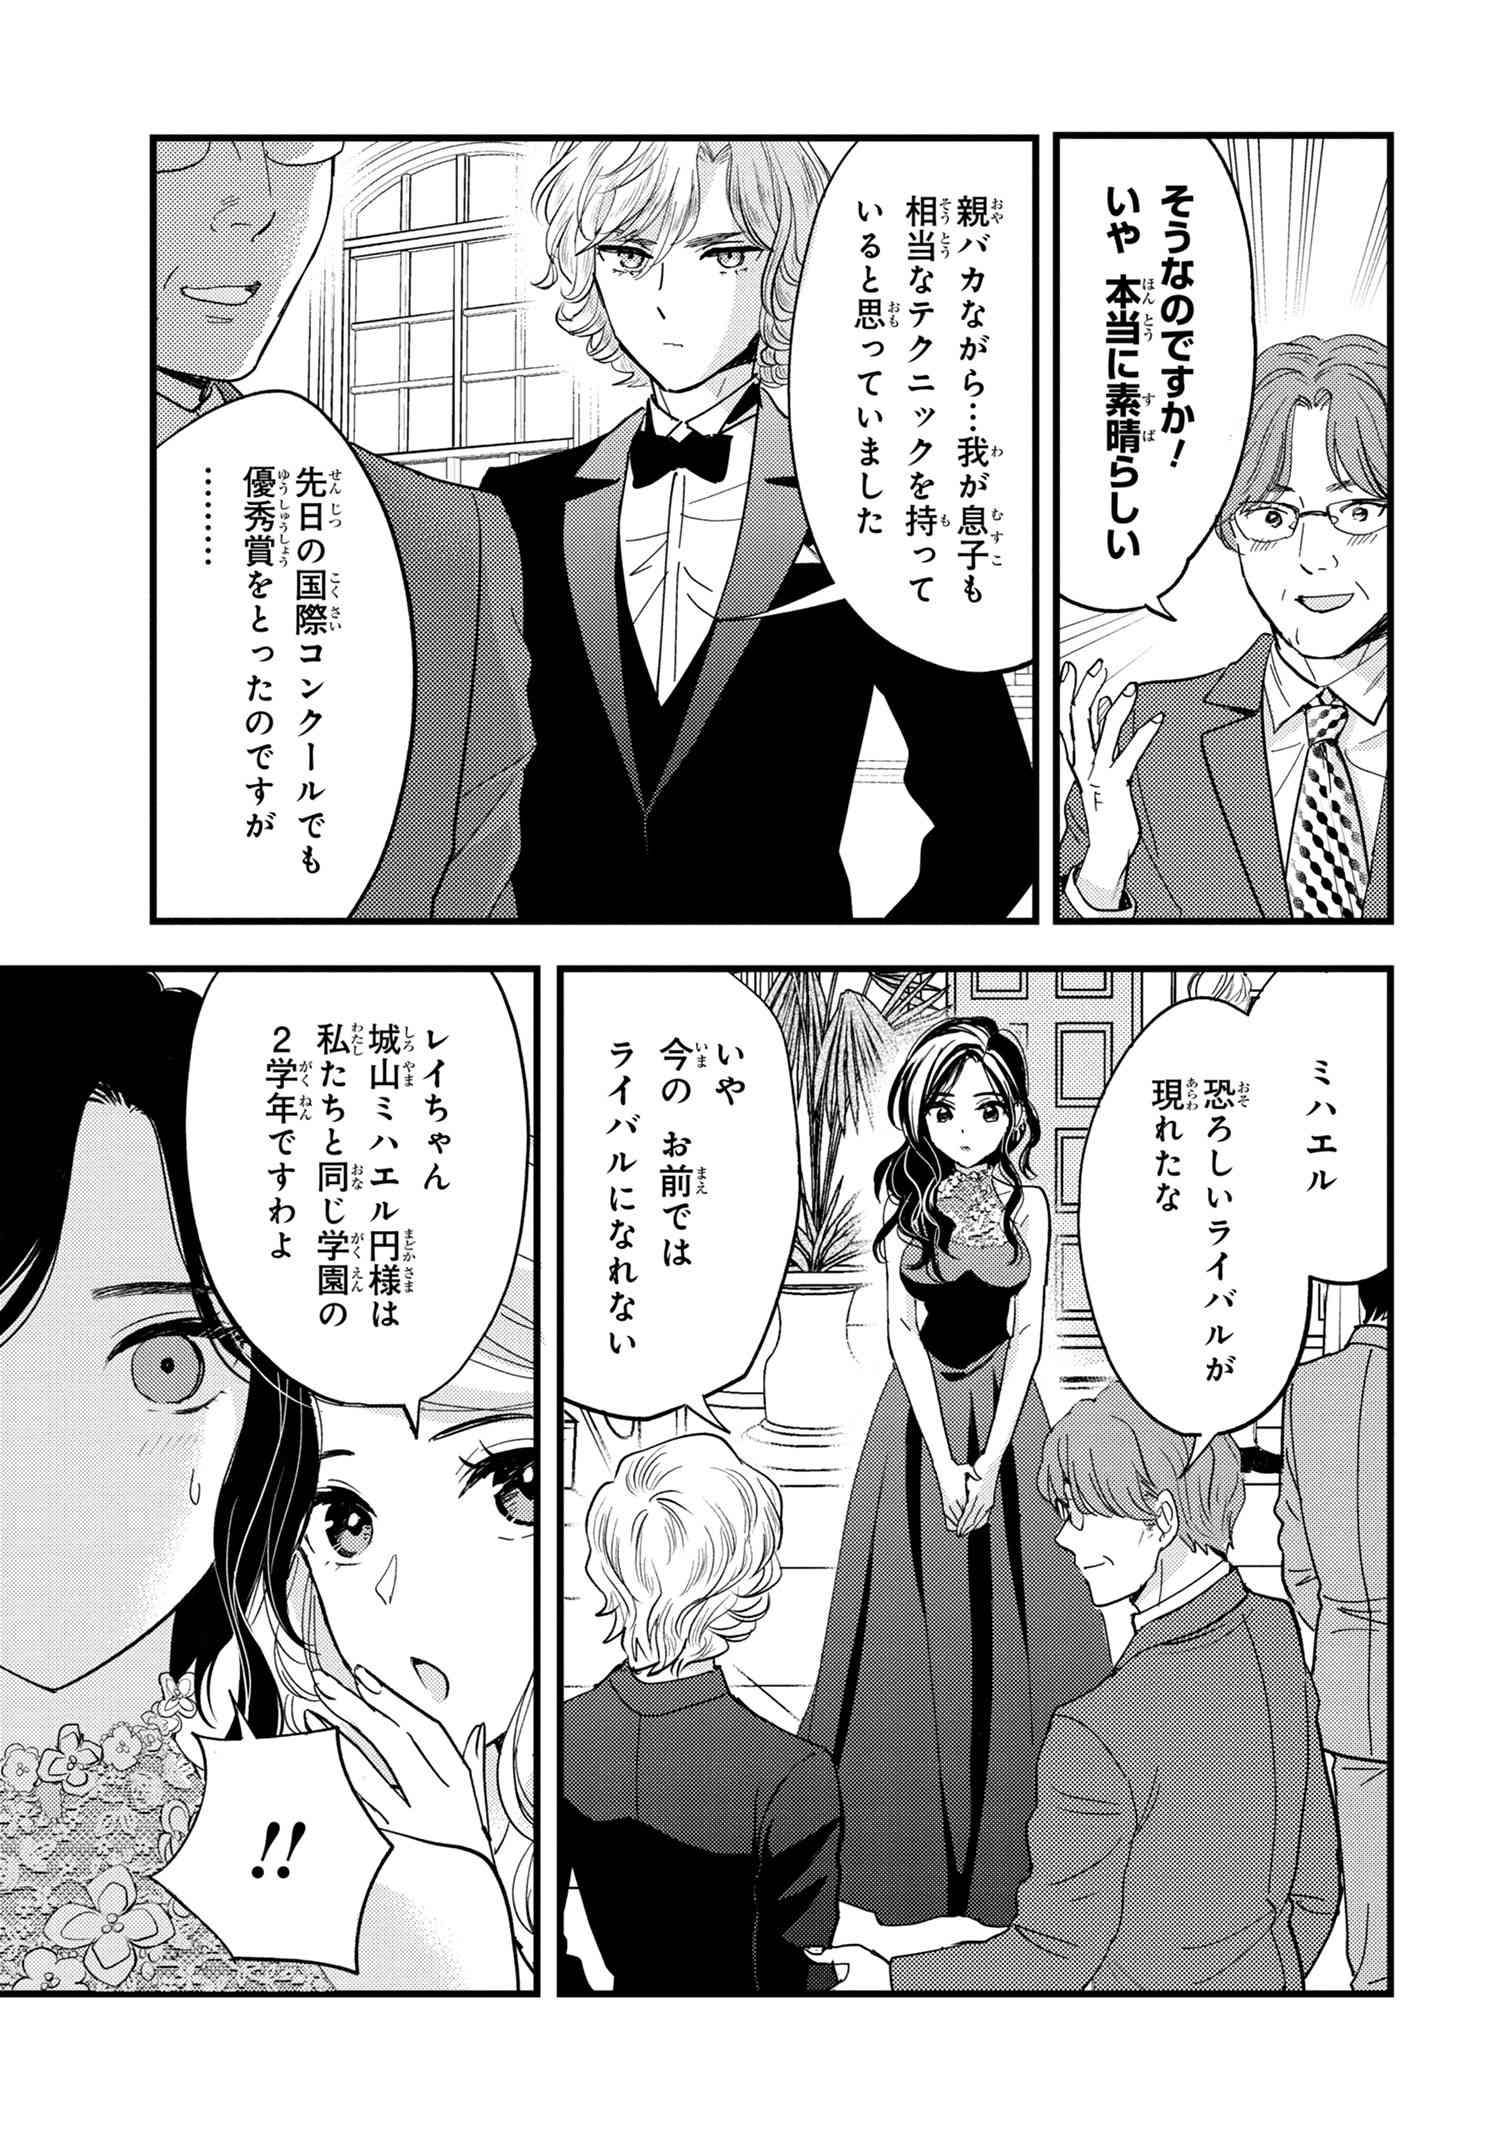 Reiko no Fuugi Akuyaku Reijou to Yobarete imasu ga, tada no Binbou Musume desu - Chapter 14-3 - Page 2